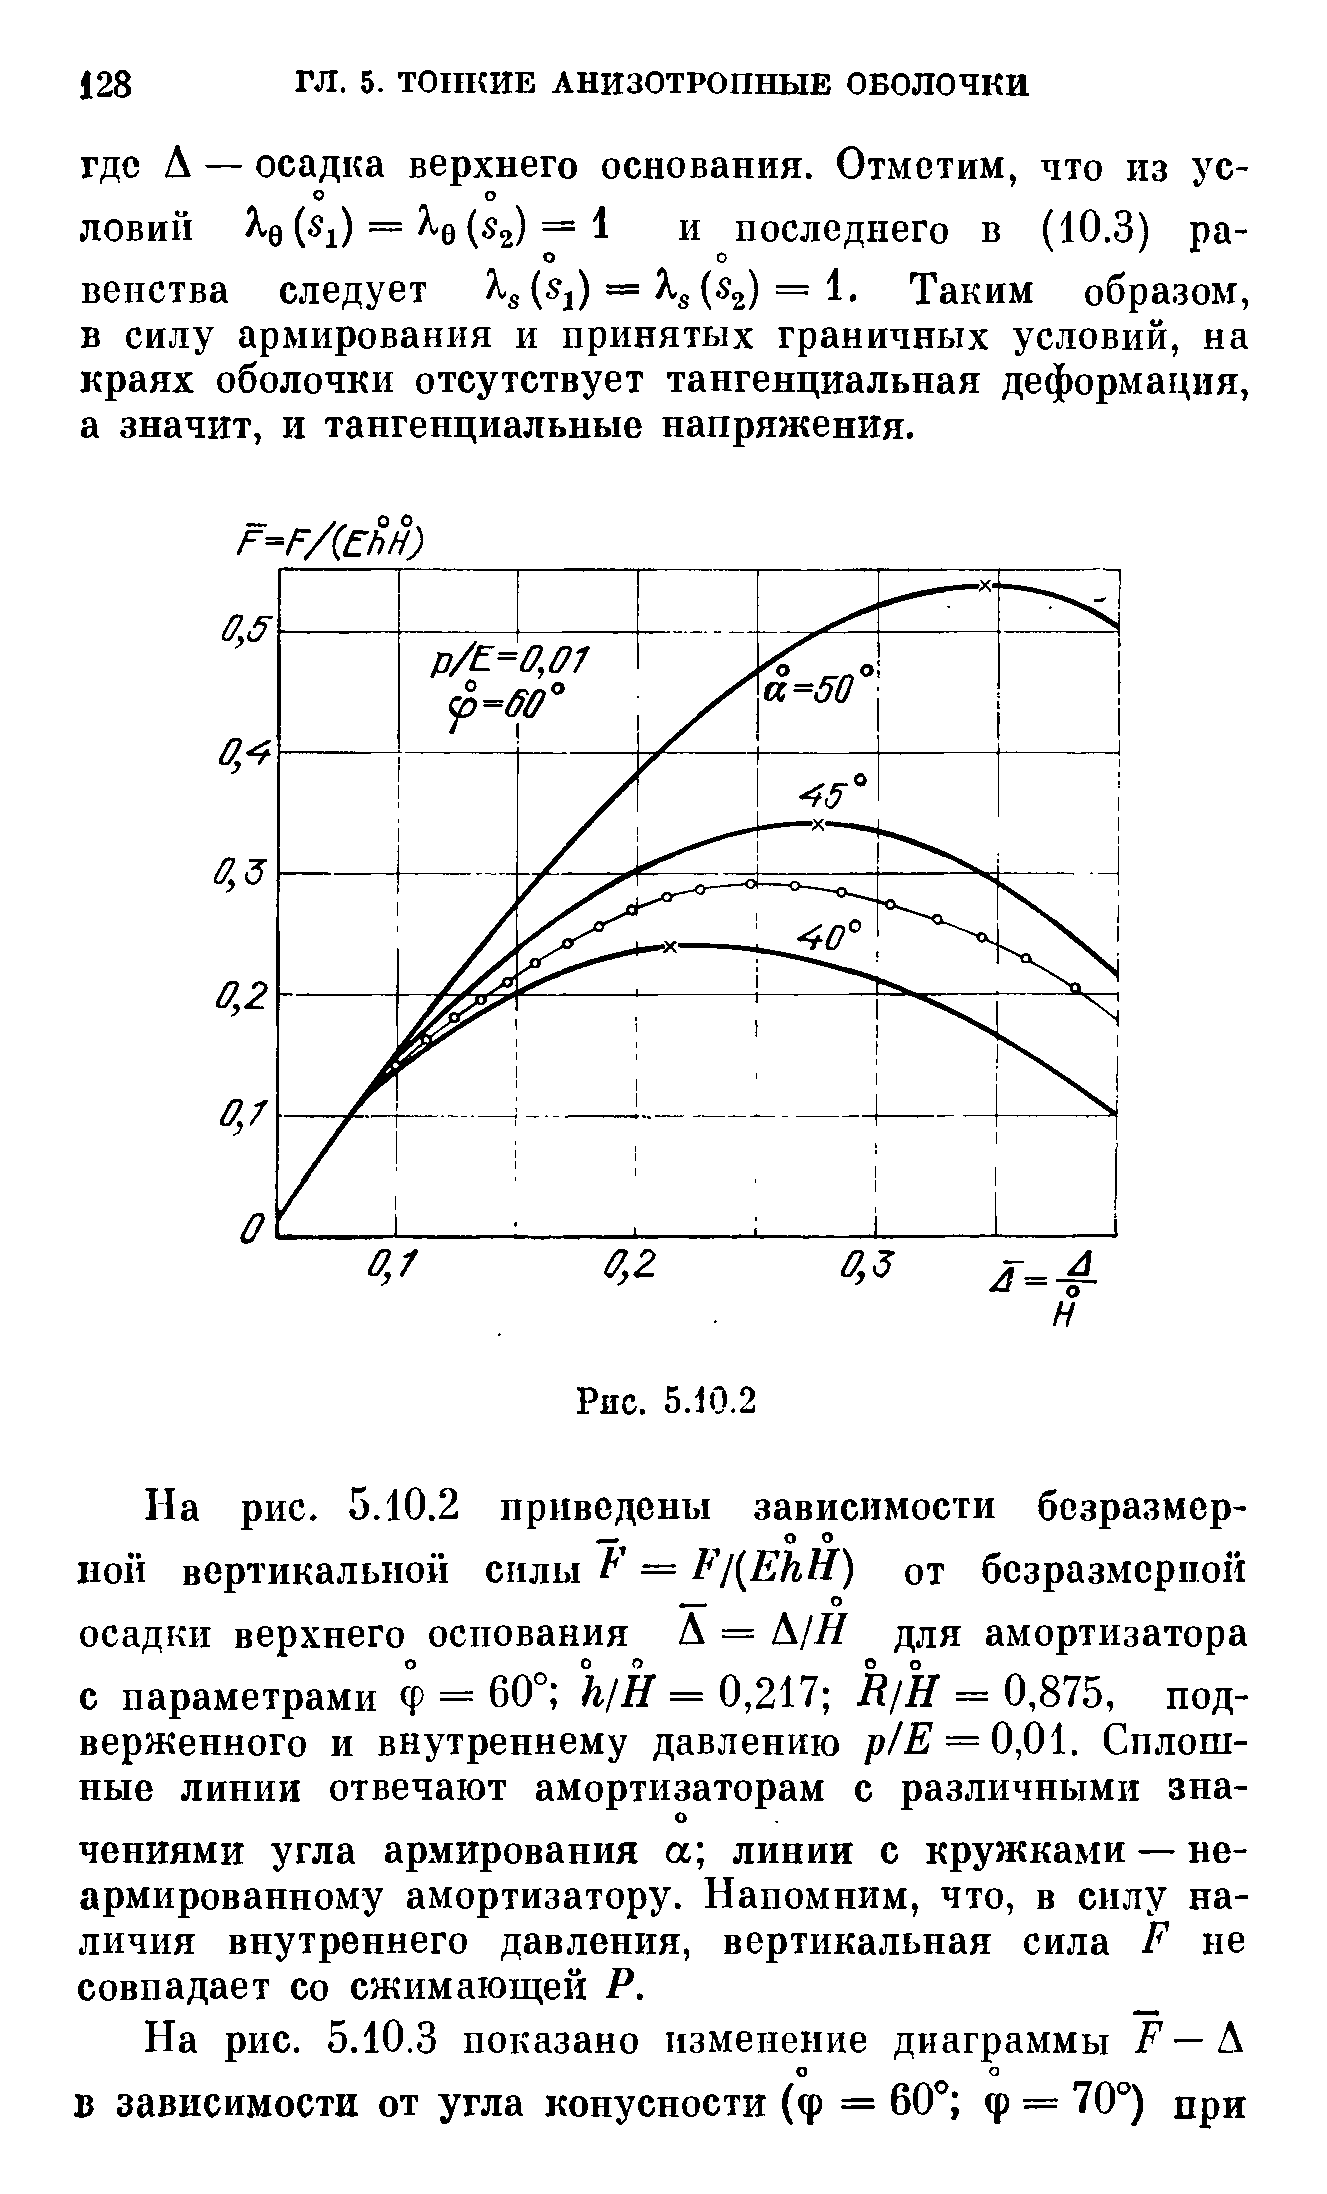 На рис. 5.10.3 показано изменение диаграммы F — S.
